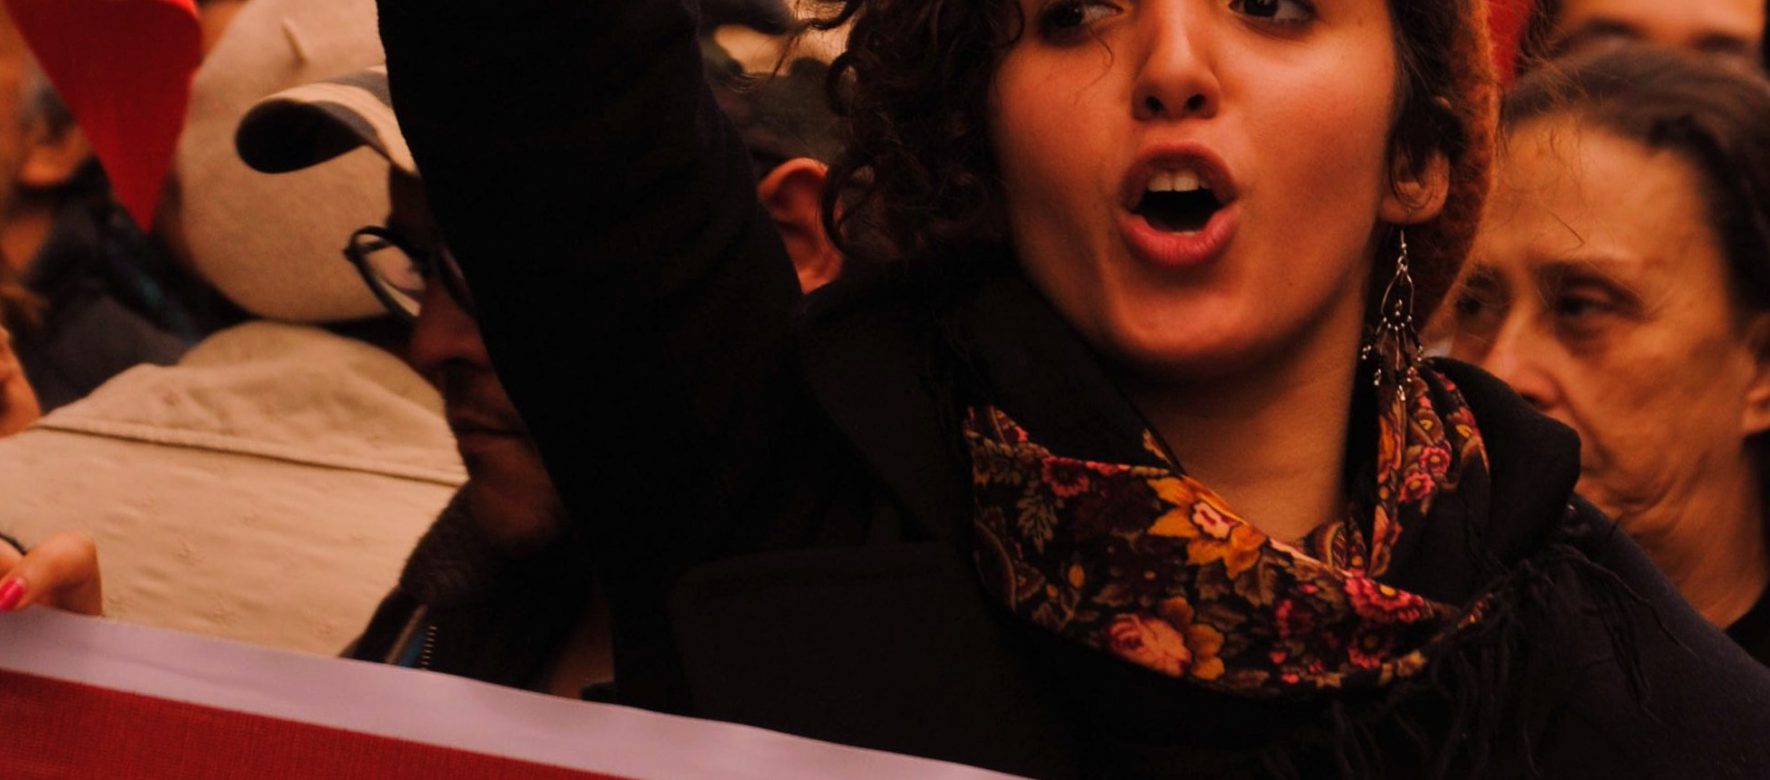 Les femmes continuent à porter la révolte et l’esprit des printemps de 2011 au Moyen-Orient et au Maghreb